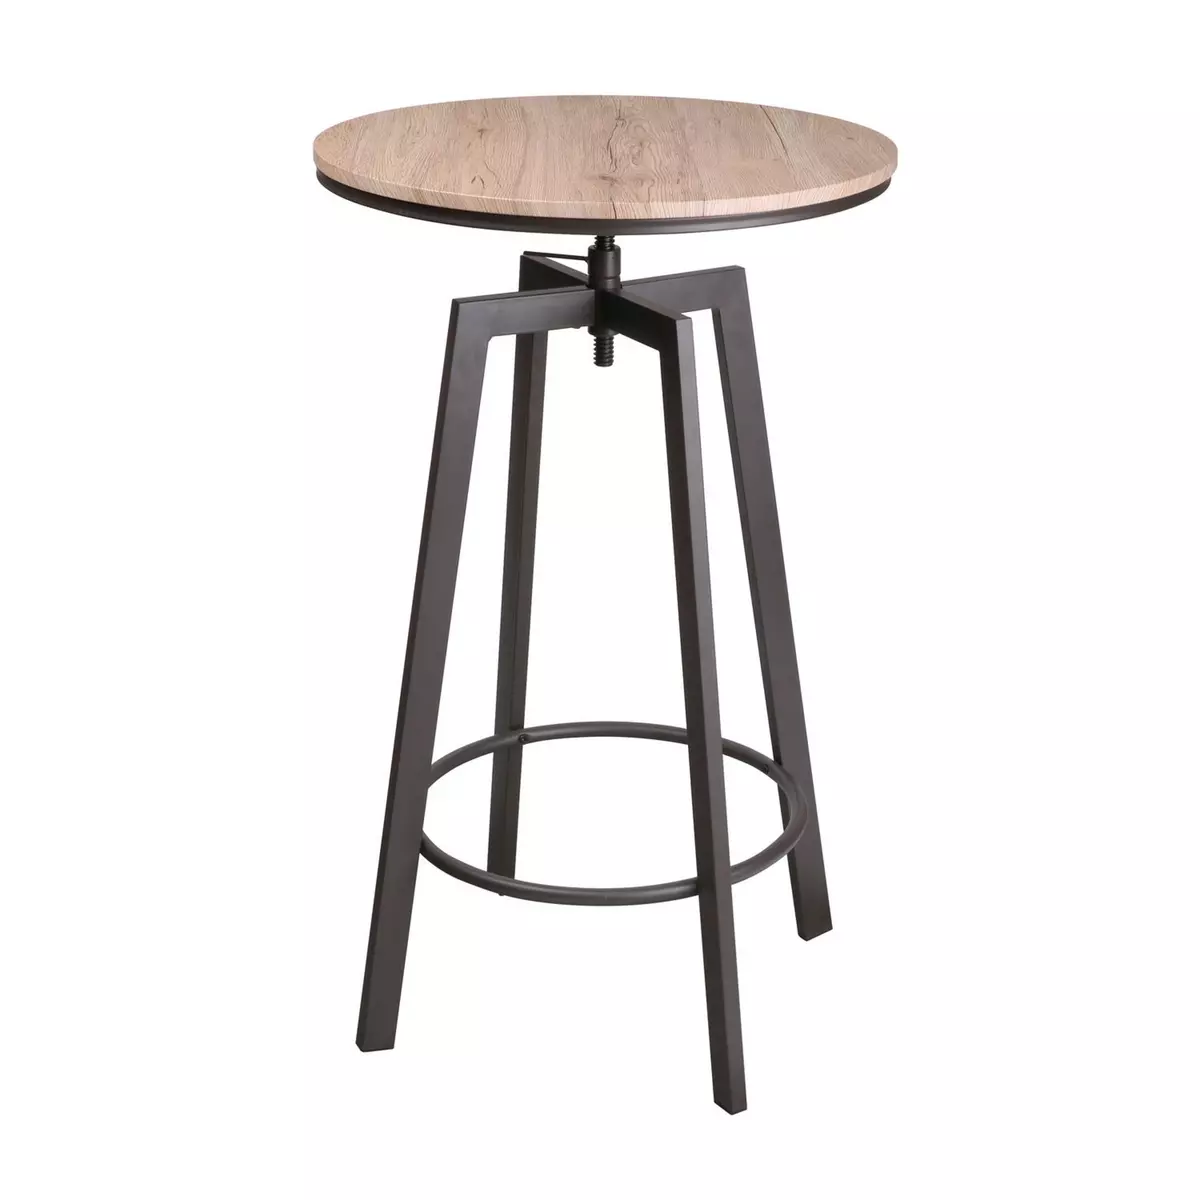 DIVERS Table haute ronde design industriel Factory - Diam. 60 x H. 93 cm - Marron